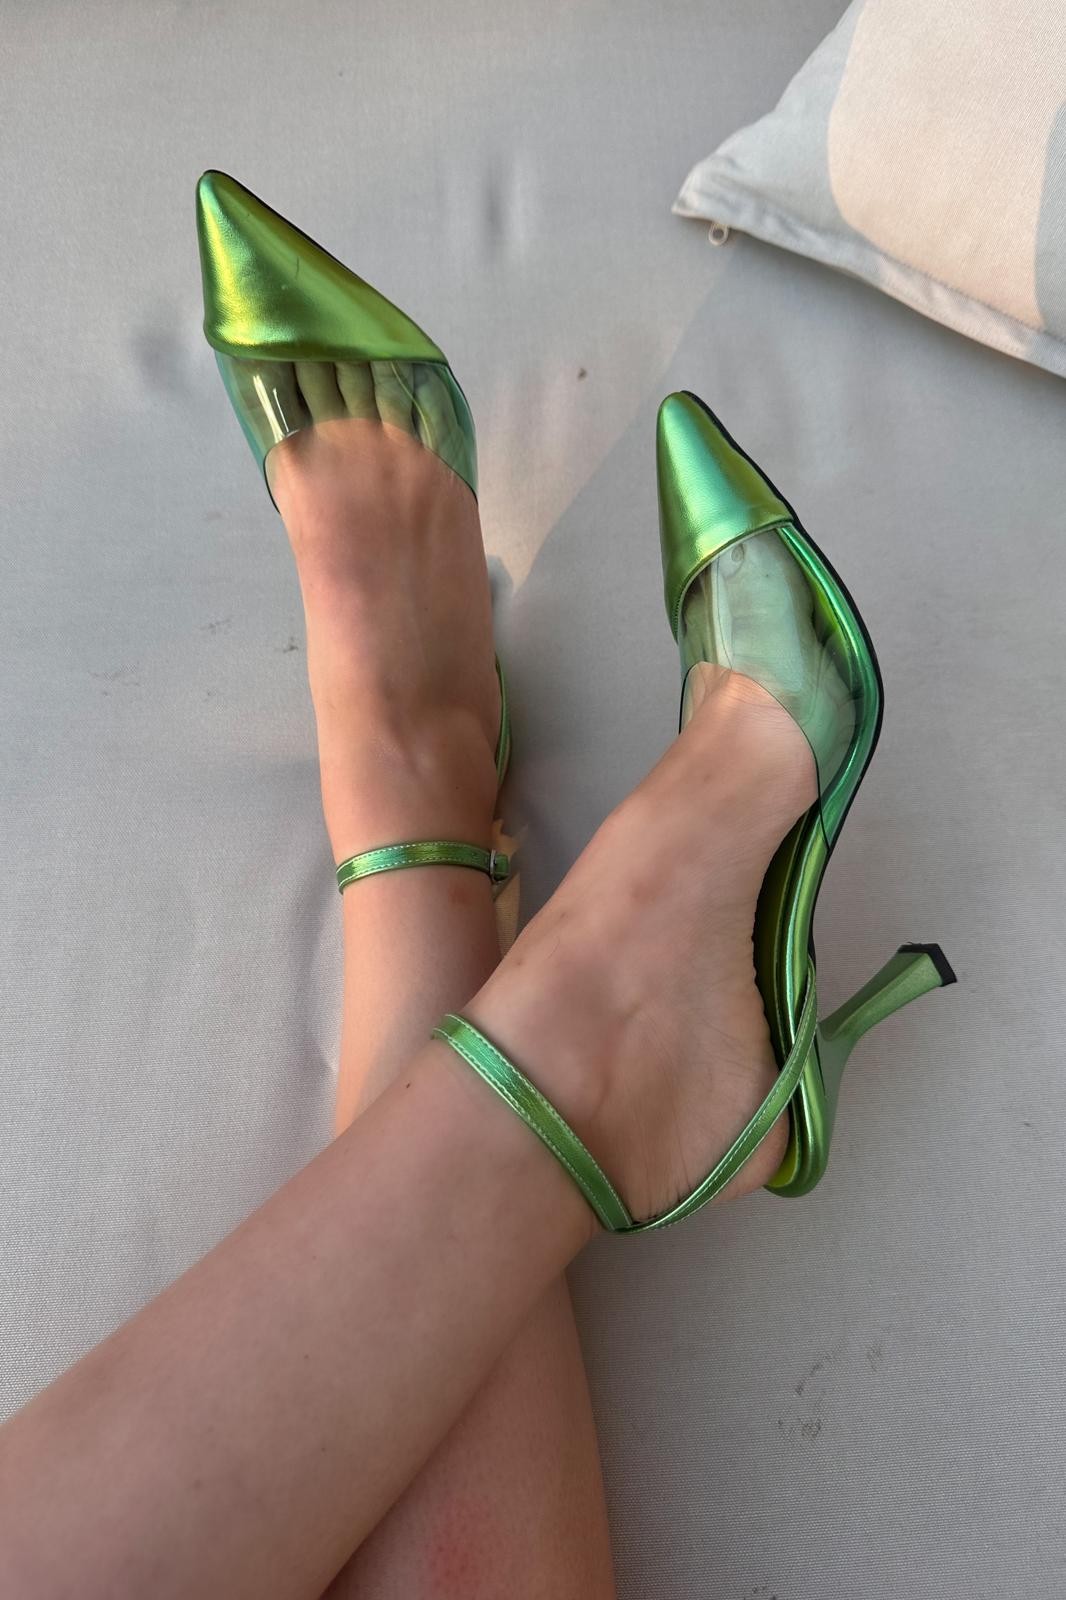 Cabrian Bright Leather Women Stiletto Metallic Green